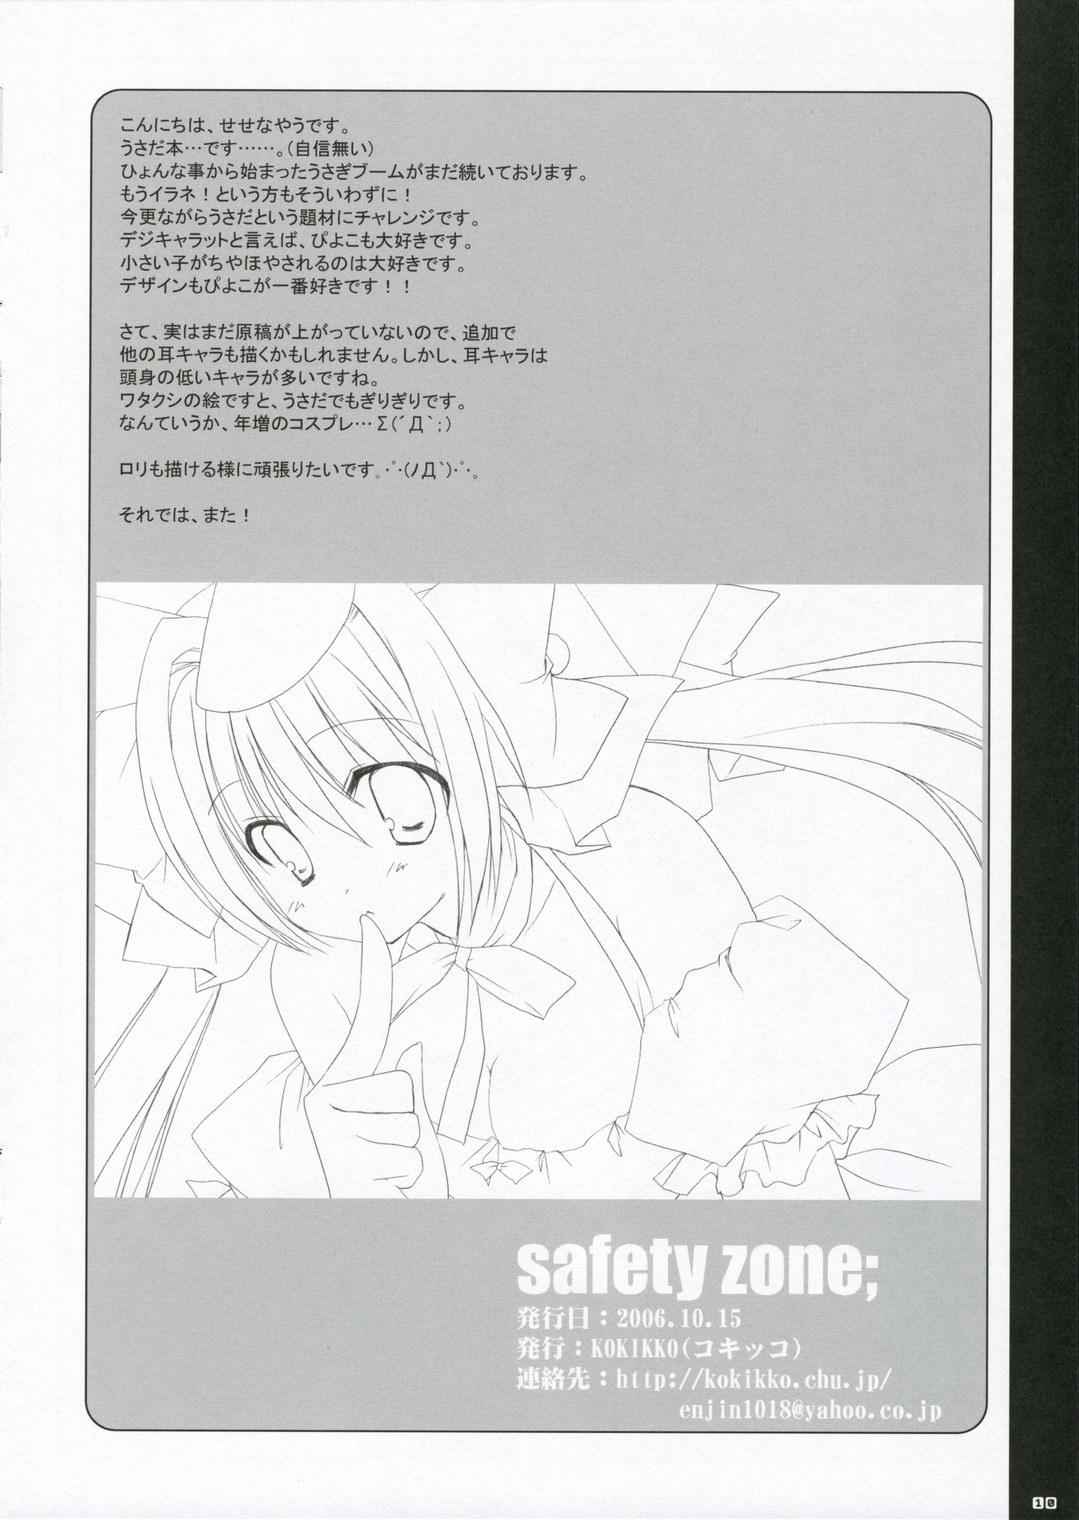 Safety Zone; 8